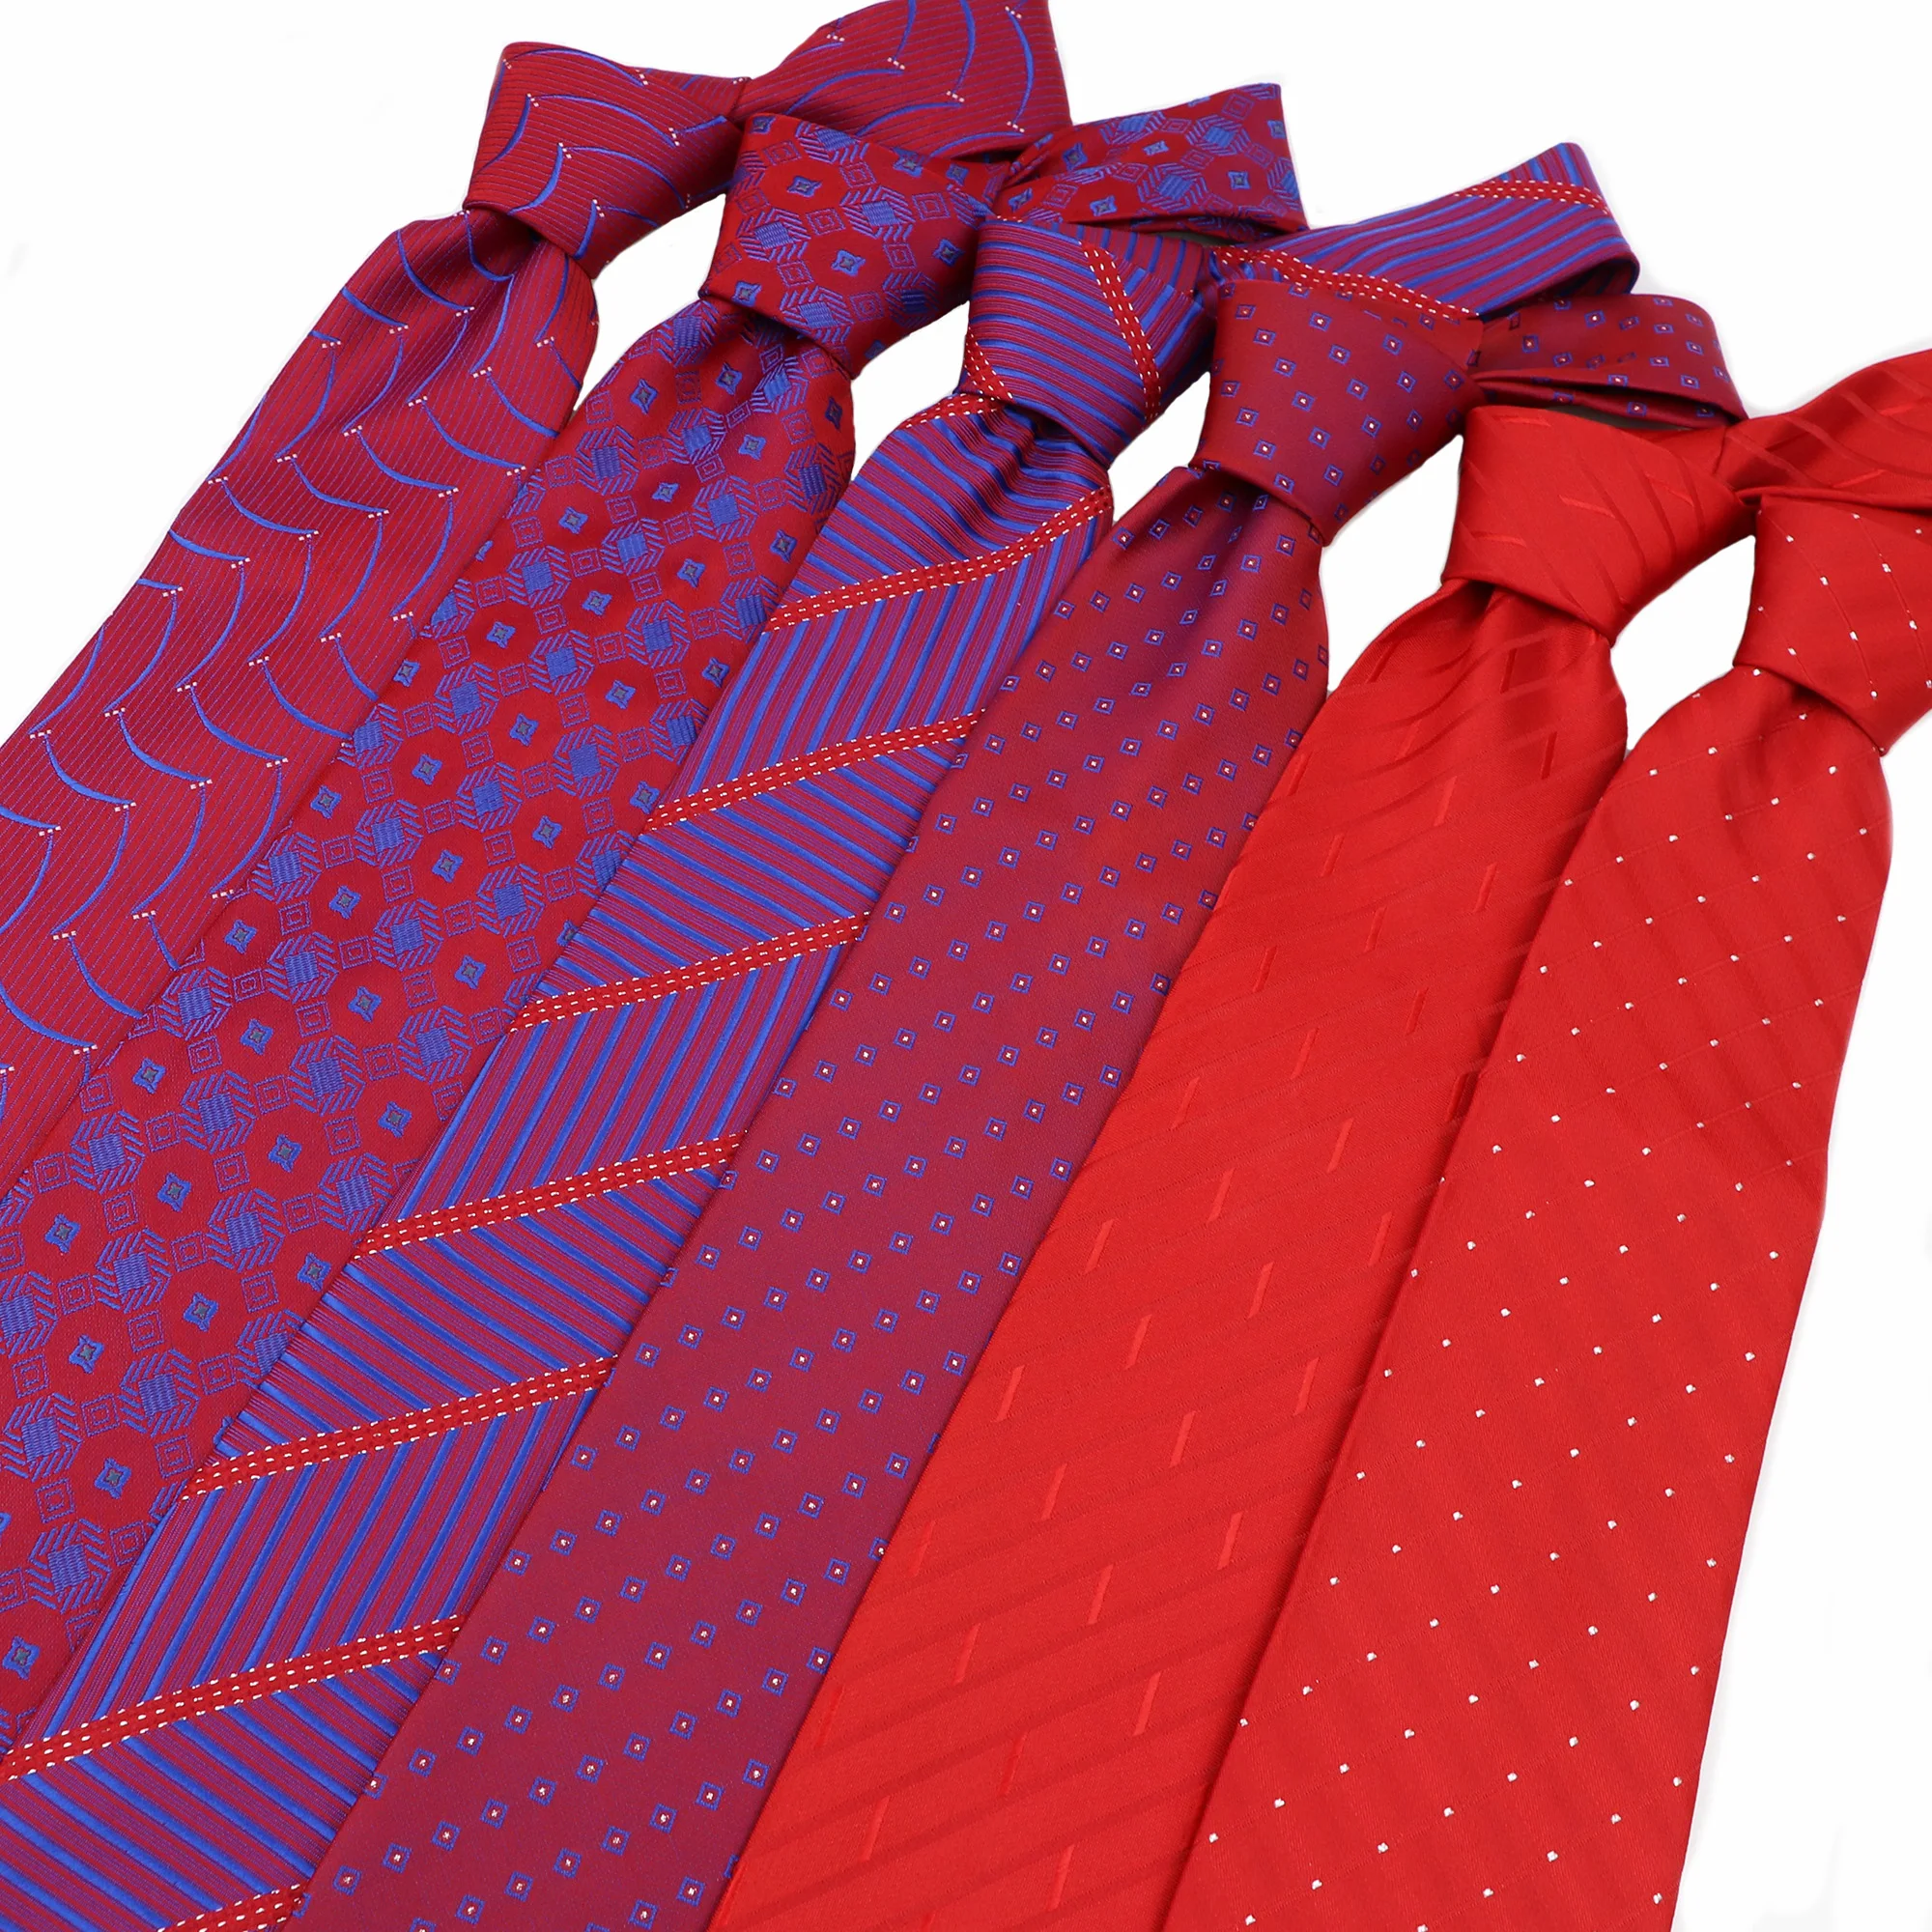 17 Color Wholesale Lot Men's Classic Tie Silk Necktie Woven Jacquard Neck Ties